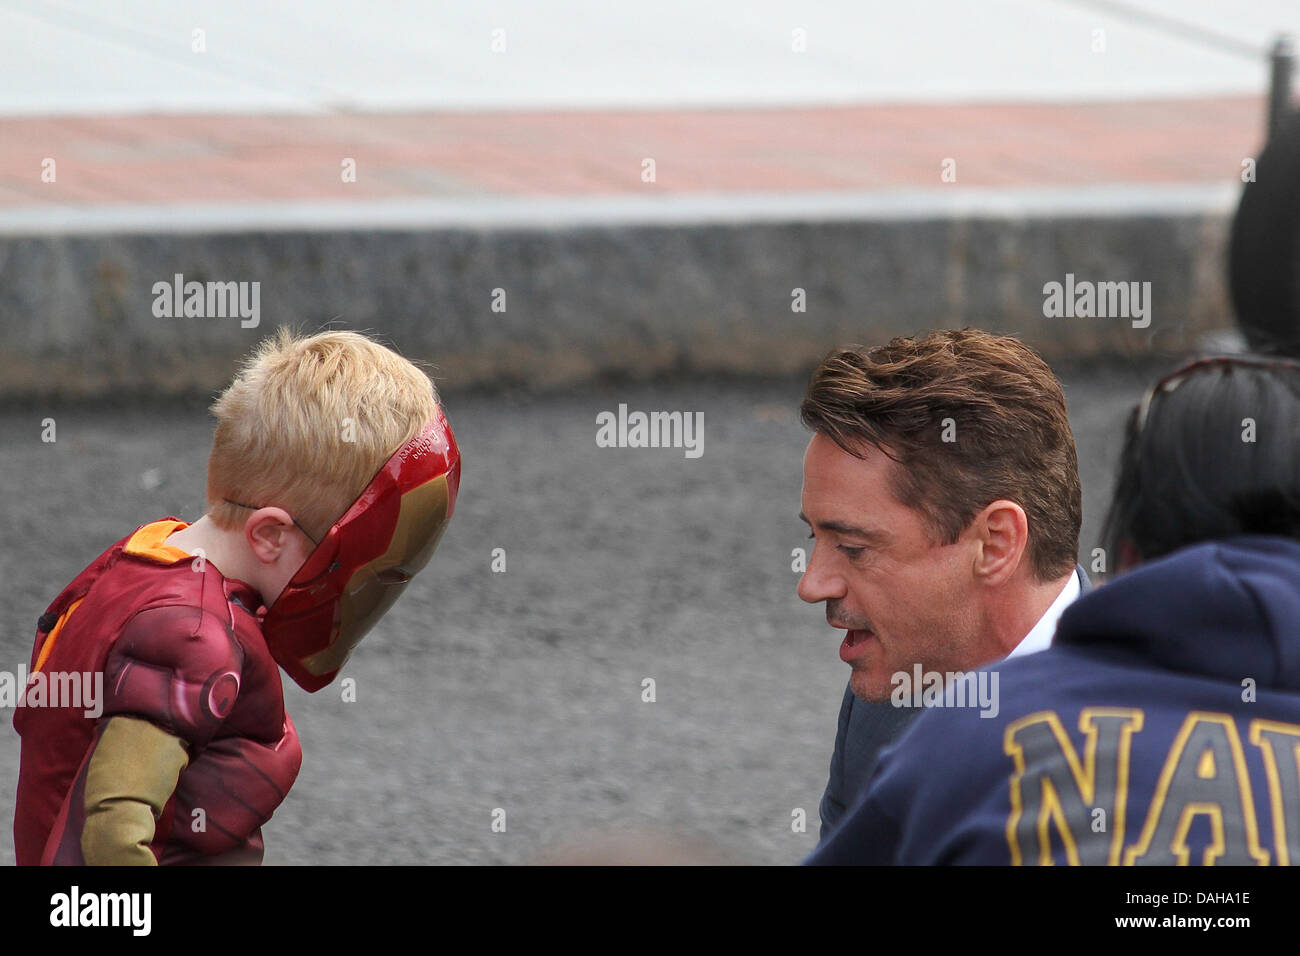 Dedham, Massachusetts. Robert Downey Jr. im Gespräch mit einem jungen in einem "Iron Man" Maske und Kostüm am Set von "The Judge" in Dedham, Massachusetts, auf Kredit-12. Juli 2013: Susan Pease/Alamy Live News Stockfoto